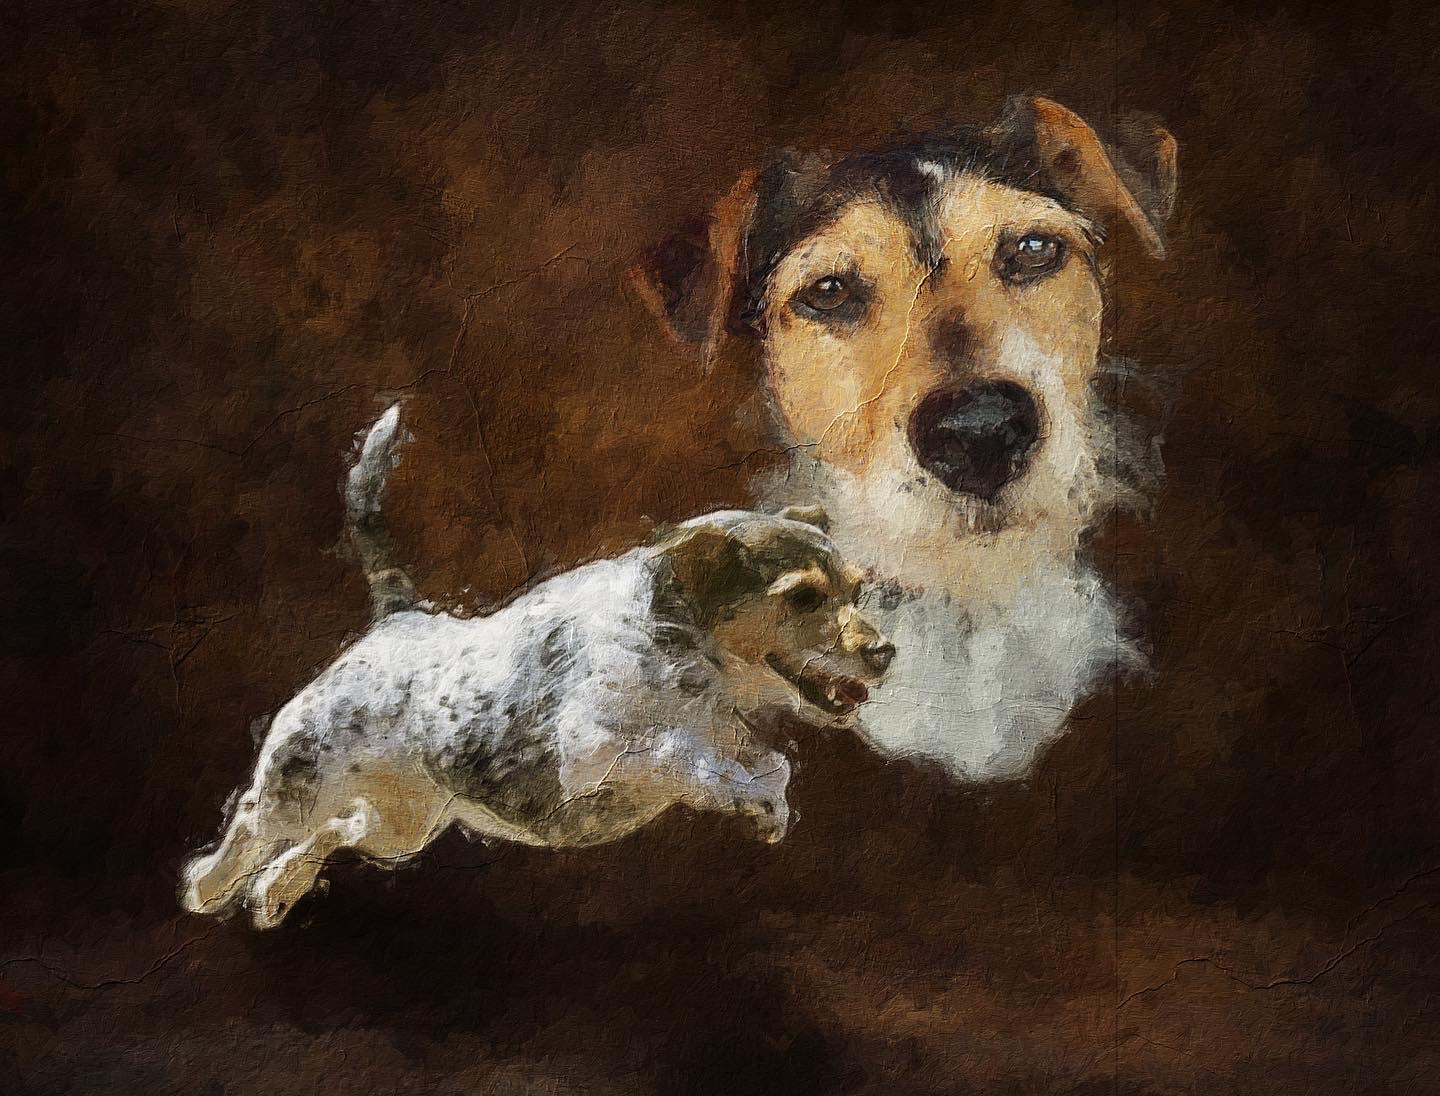 Pet Portrait - 'Oil on canvas'